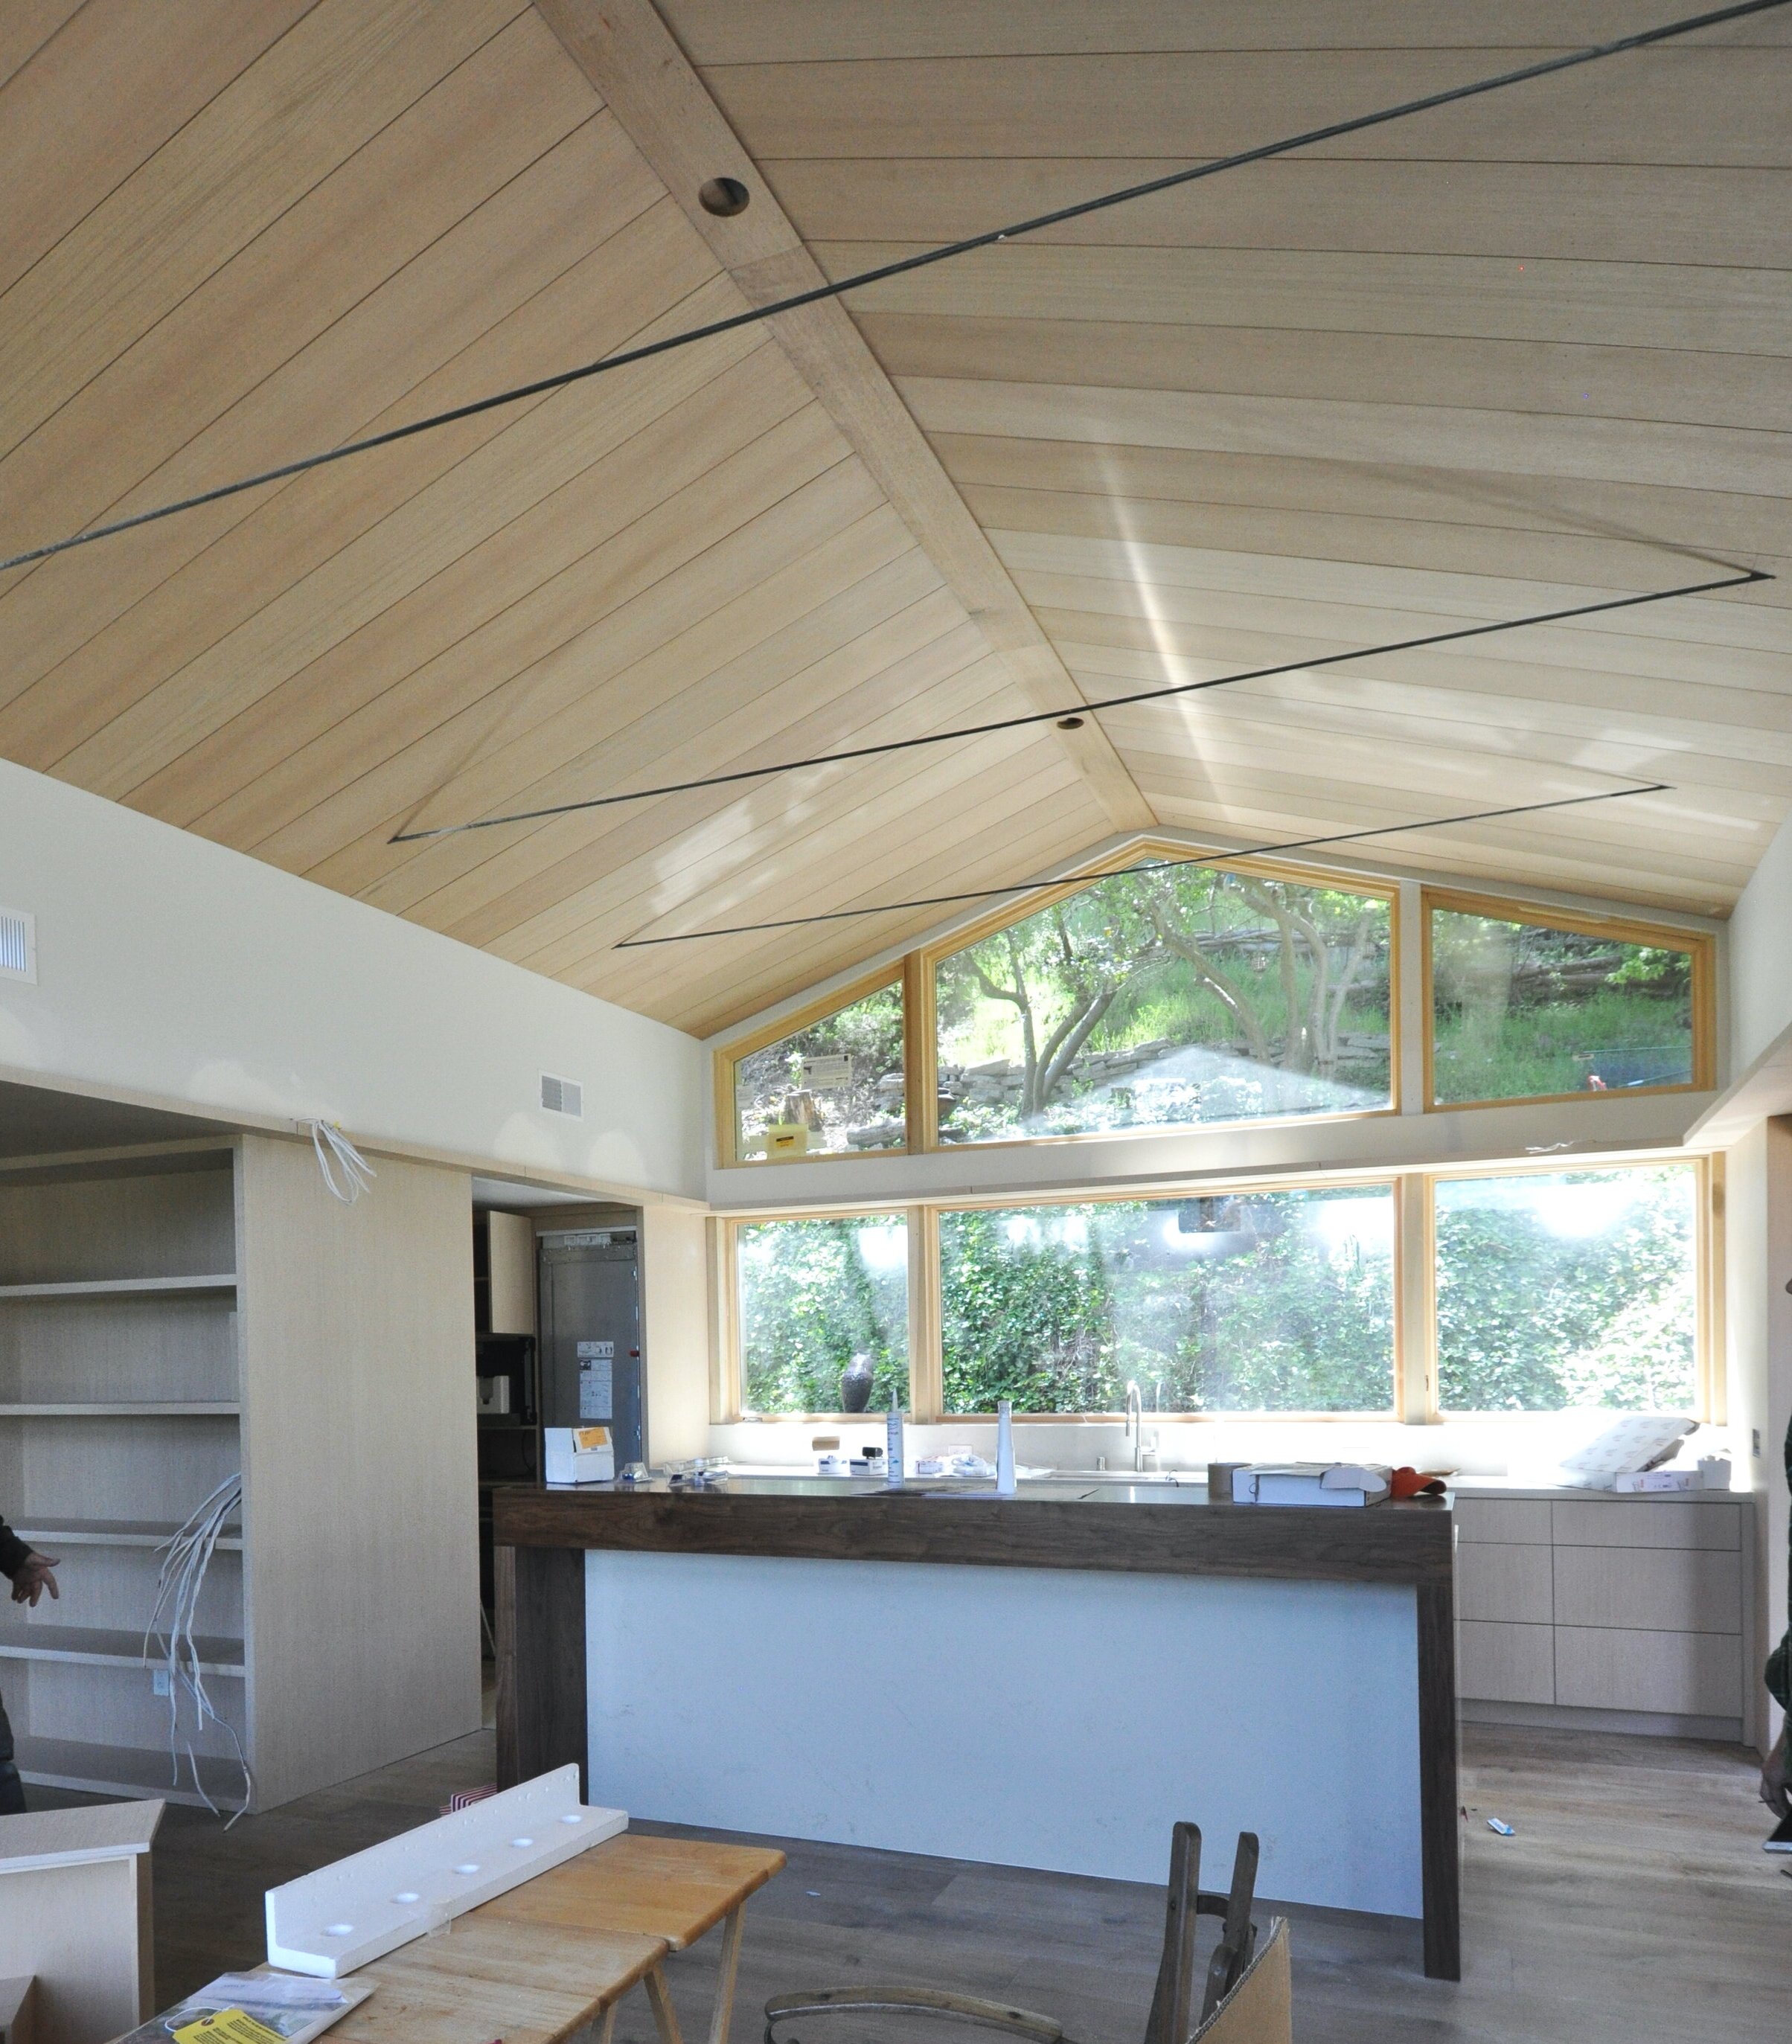 Oak Vaulted Ceiling with 3 Steel Tension Ties